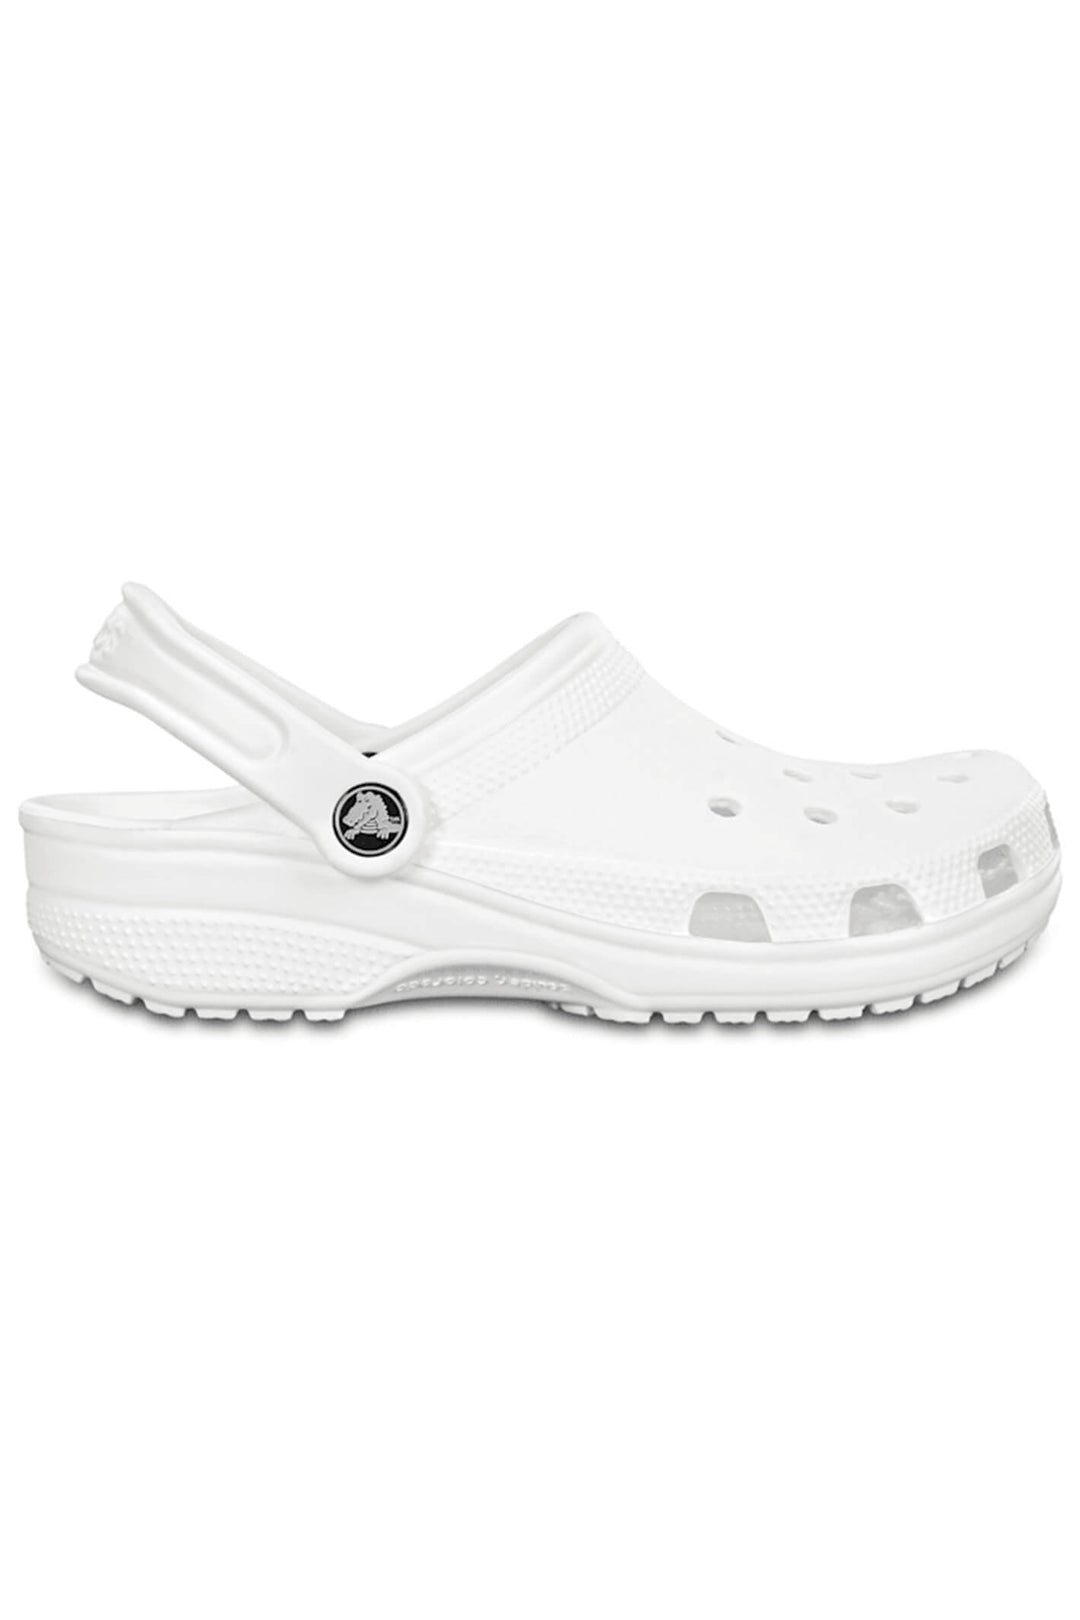 Crocs Classic 10001 100 White Clog - Shirley Allum Boutique